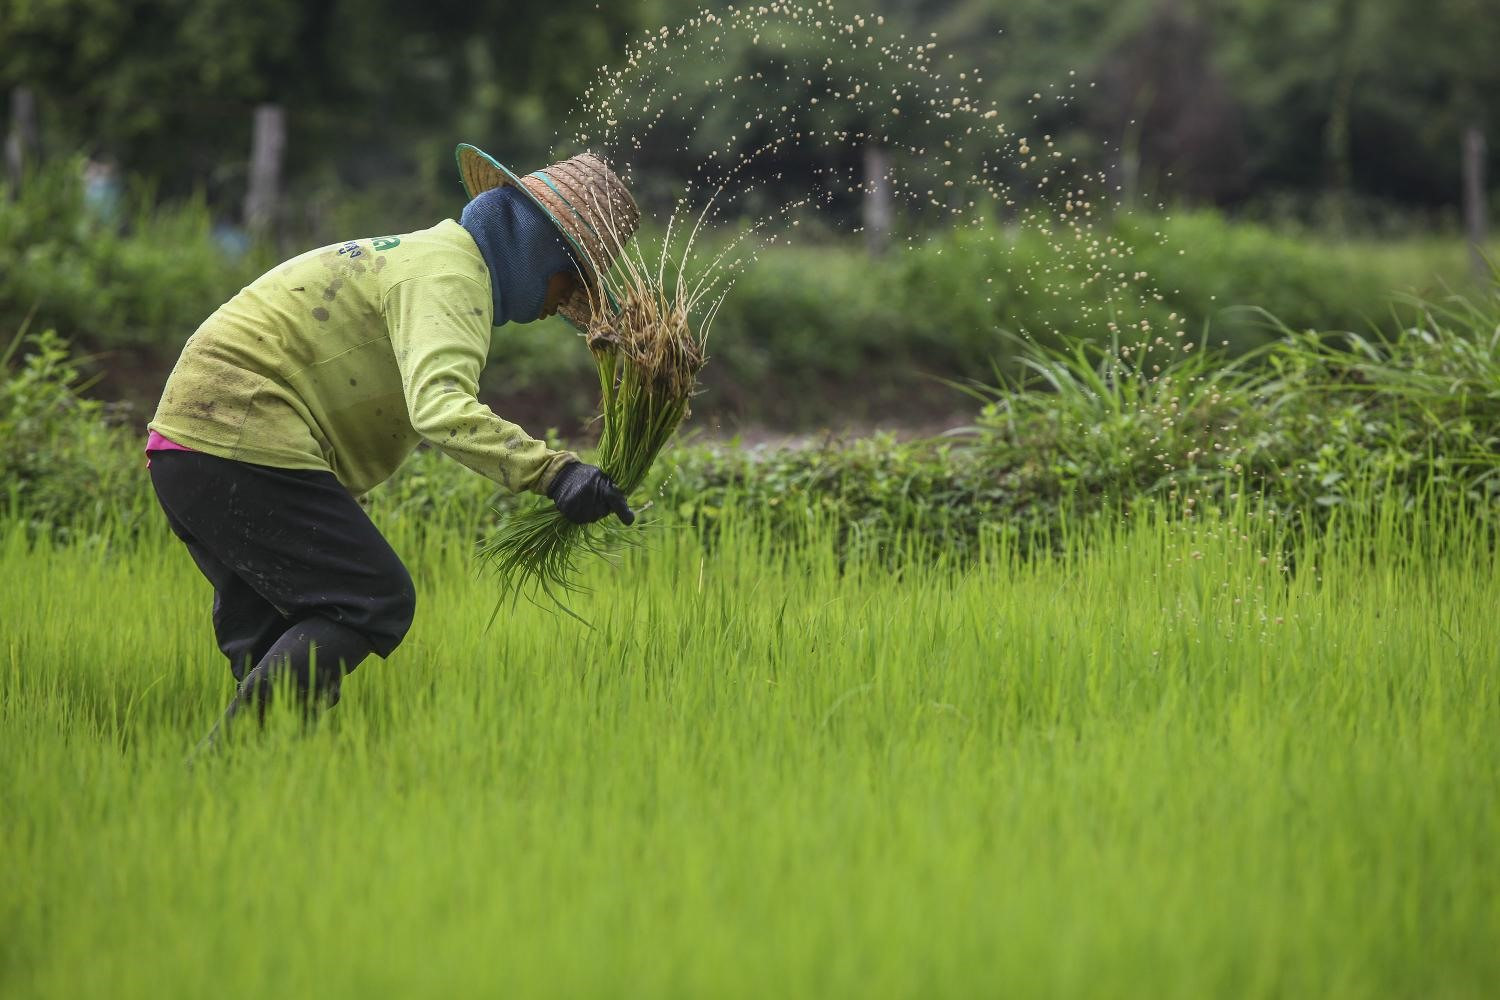 Nông nghiệp thông minh giúp nông dân Thái Lan thích ứng biến đổi khí hậu, bảo vệ môi trường và cải thiện thu nhập. Ảnh: bangkokpost